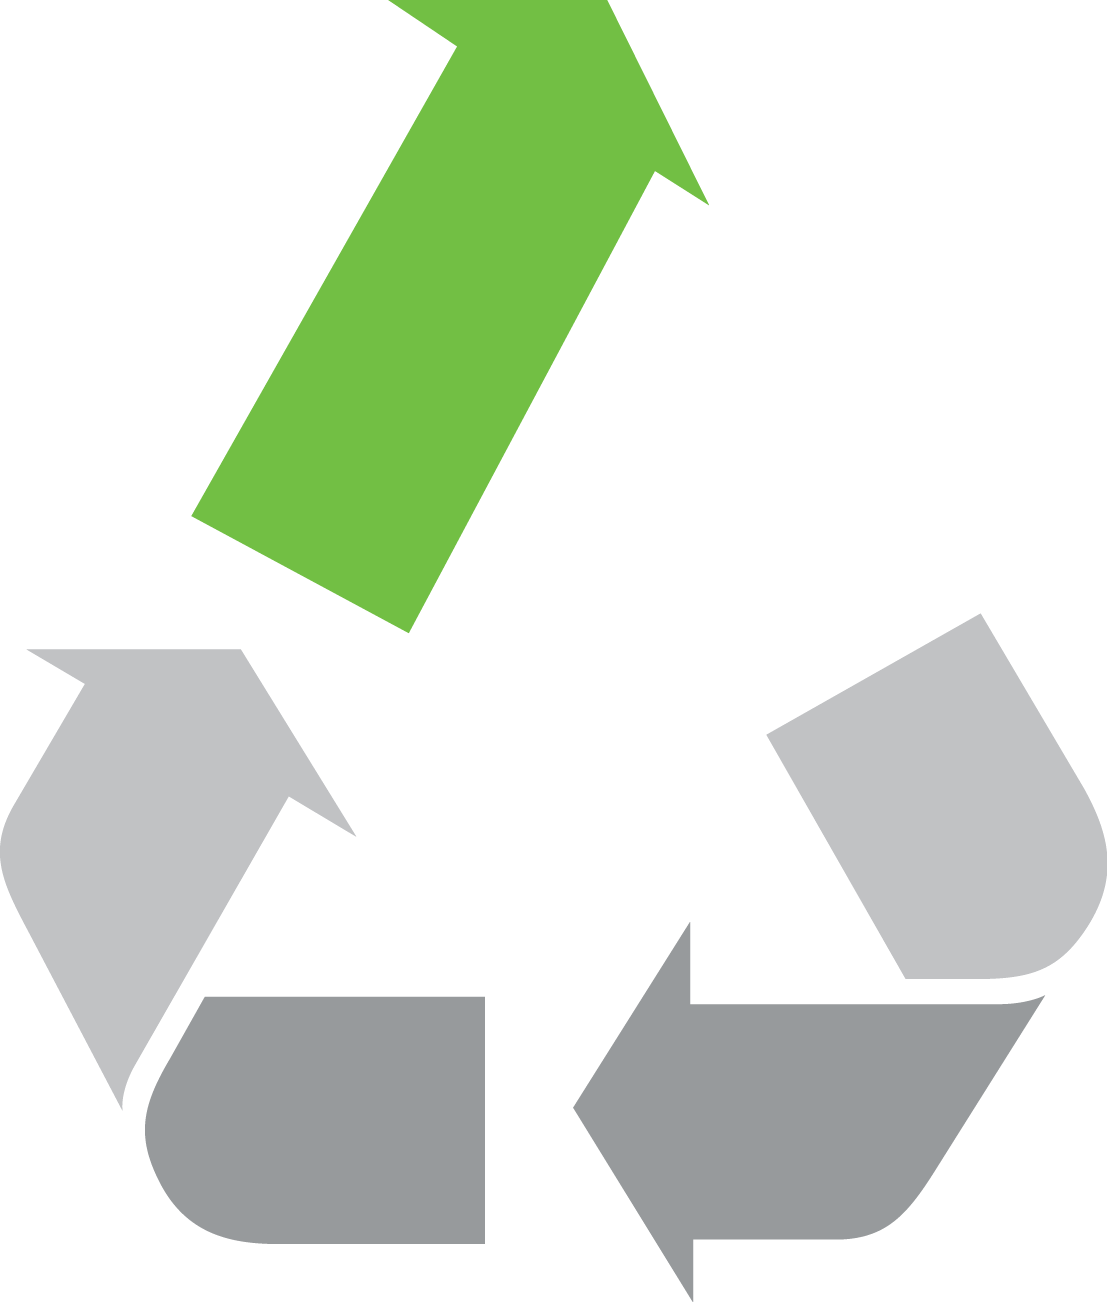 Upcycled Logo